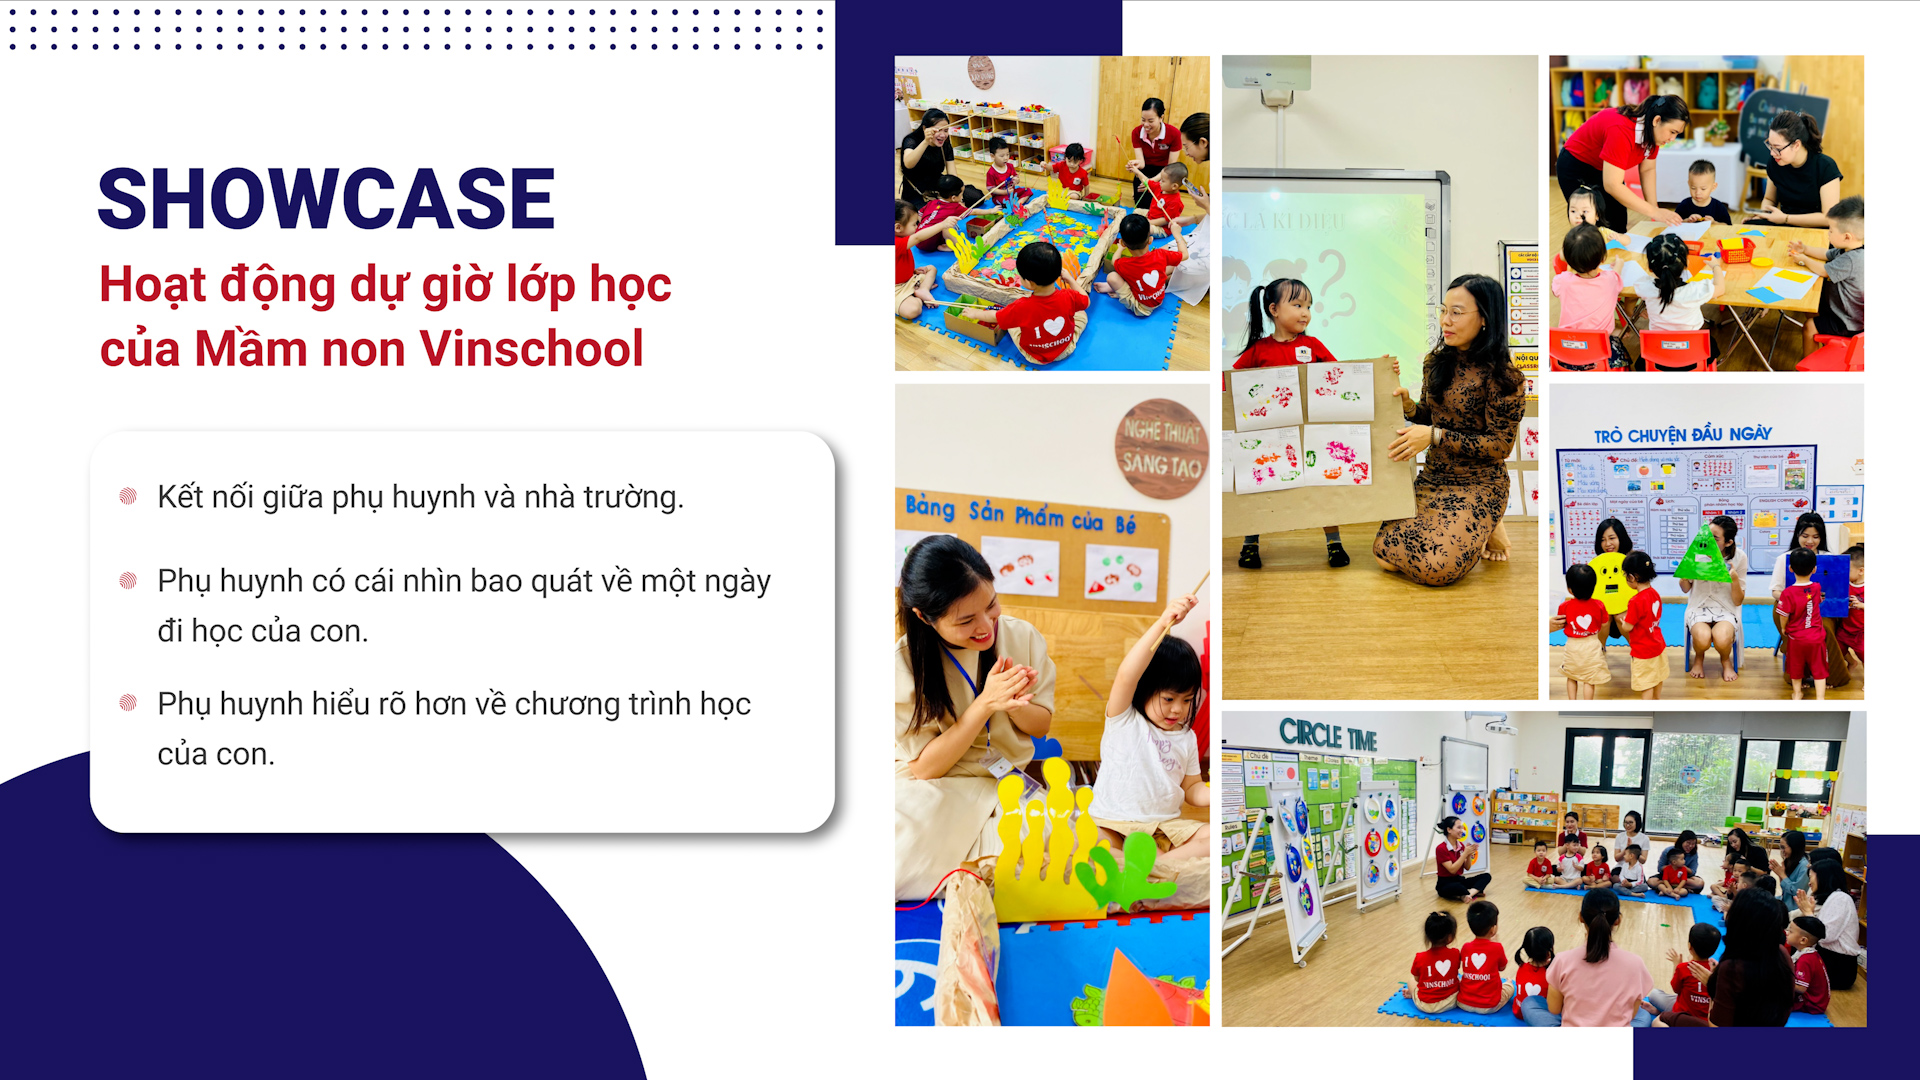 Exciting Showcase Activities at Vinschool Kindergarten